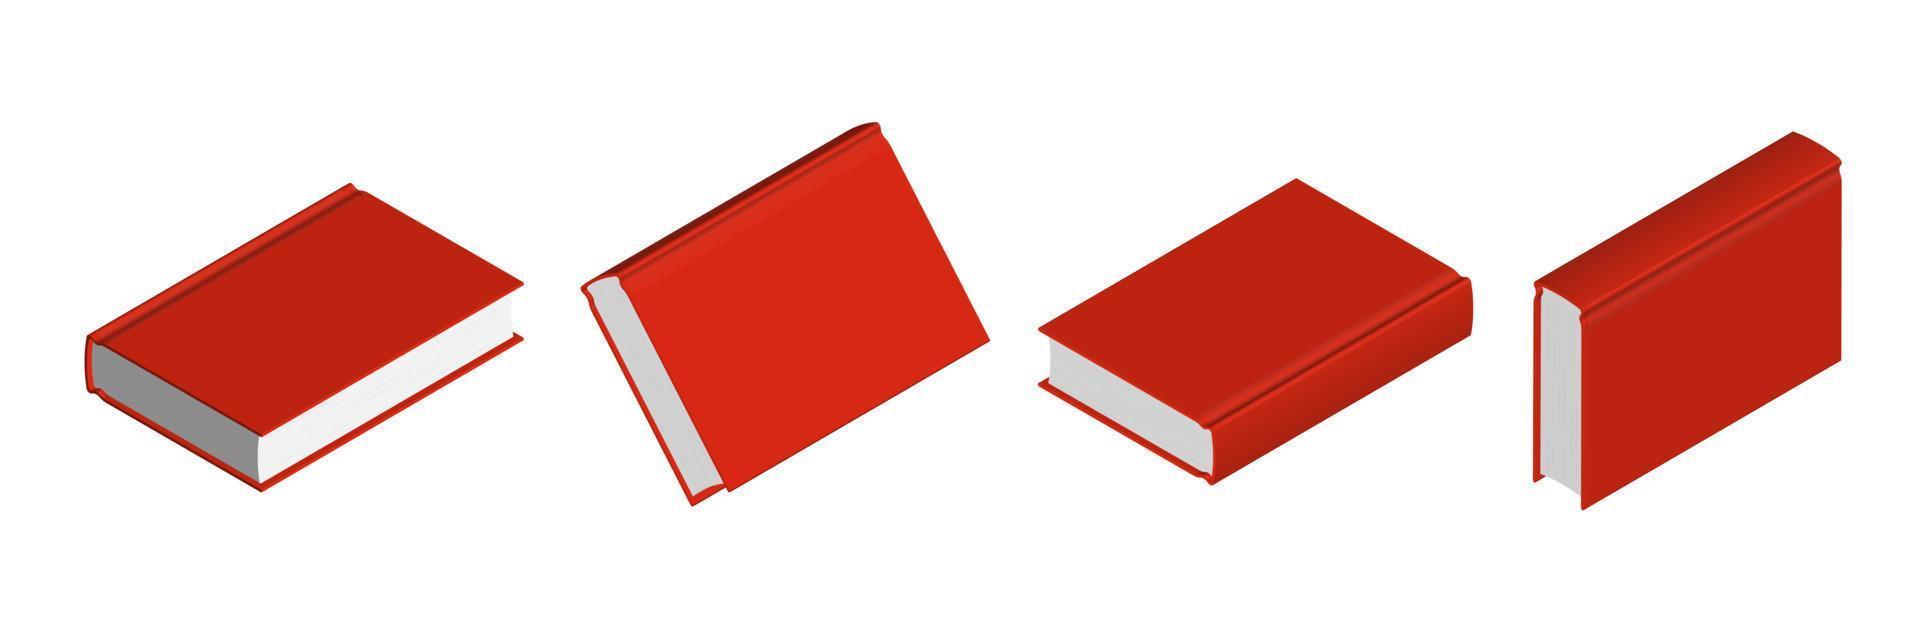 conjunto de libros rojos cerrados en diferentes posiciones para librería vector